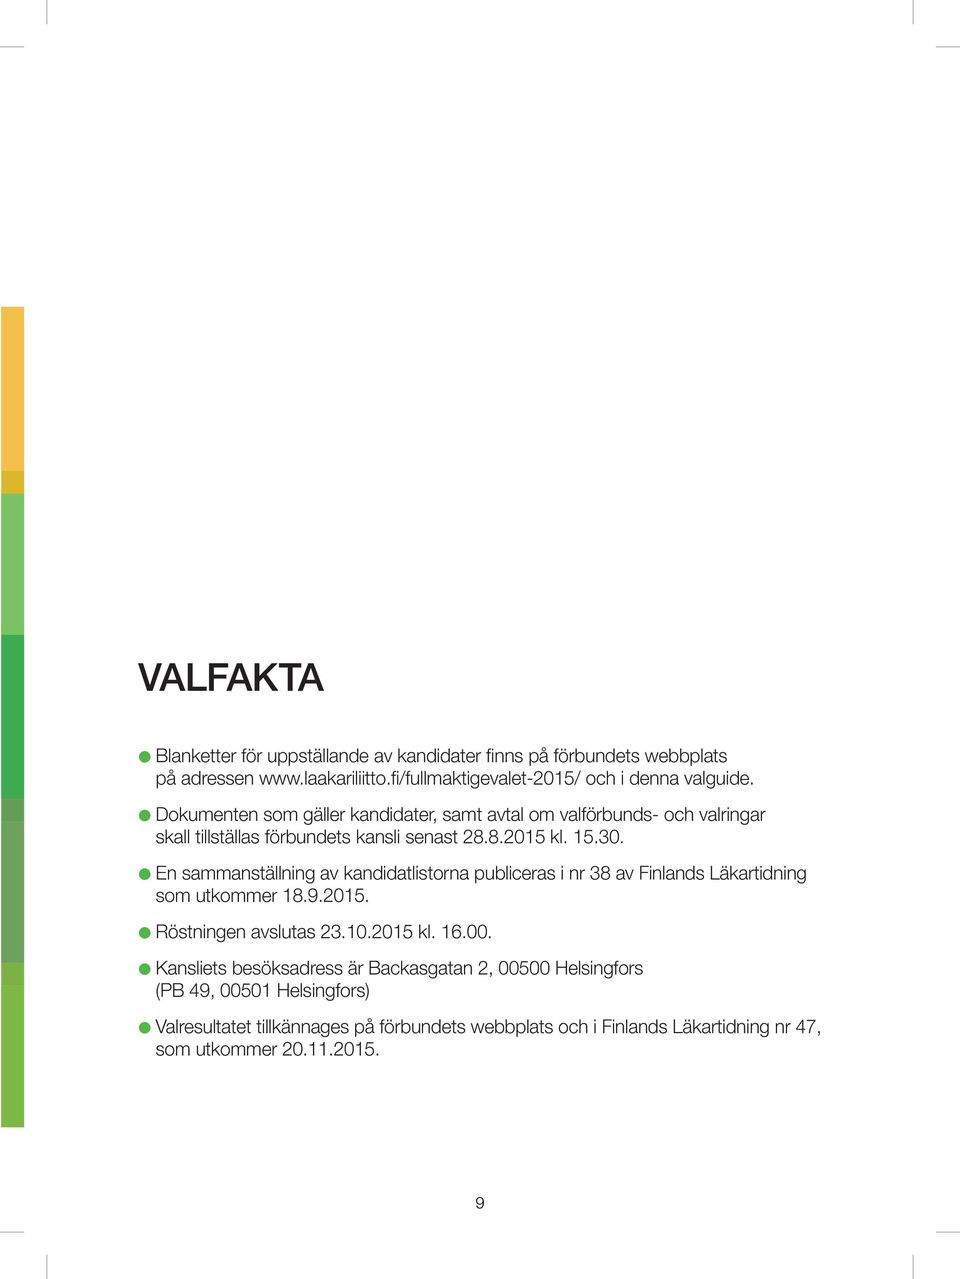 En sammanställning av kandidatlistorna publiceras i nr 38 av Finlands Läkartidning som utkommer 18.9.2015. Röstningen avslutas 23.10.2015 kl. 16.00.